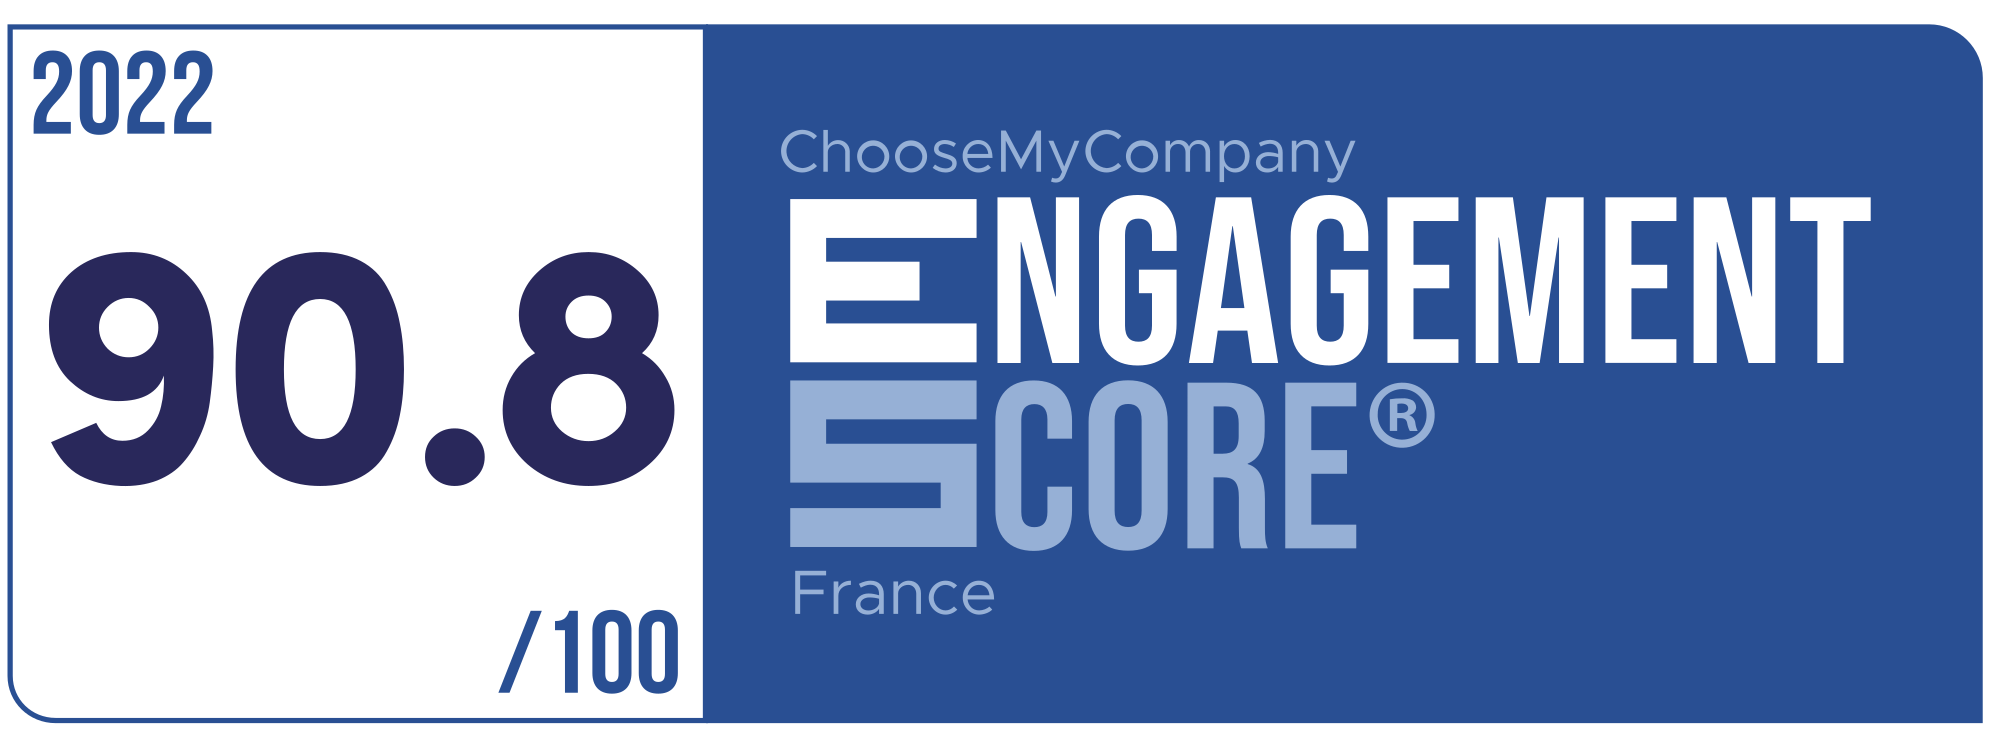 Label Engagement Score 2022 France